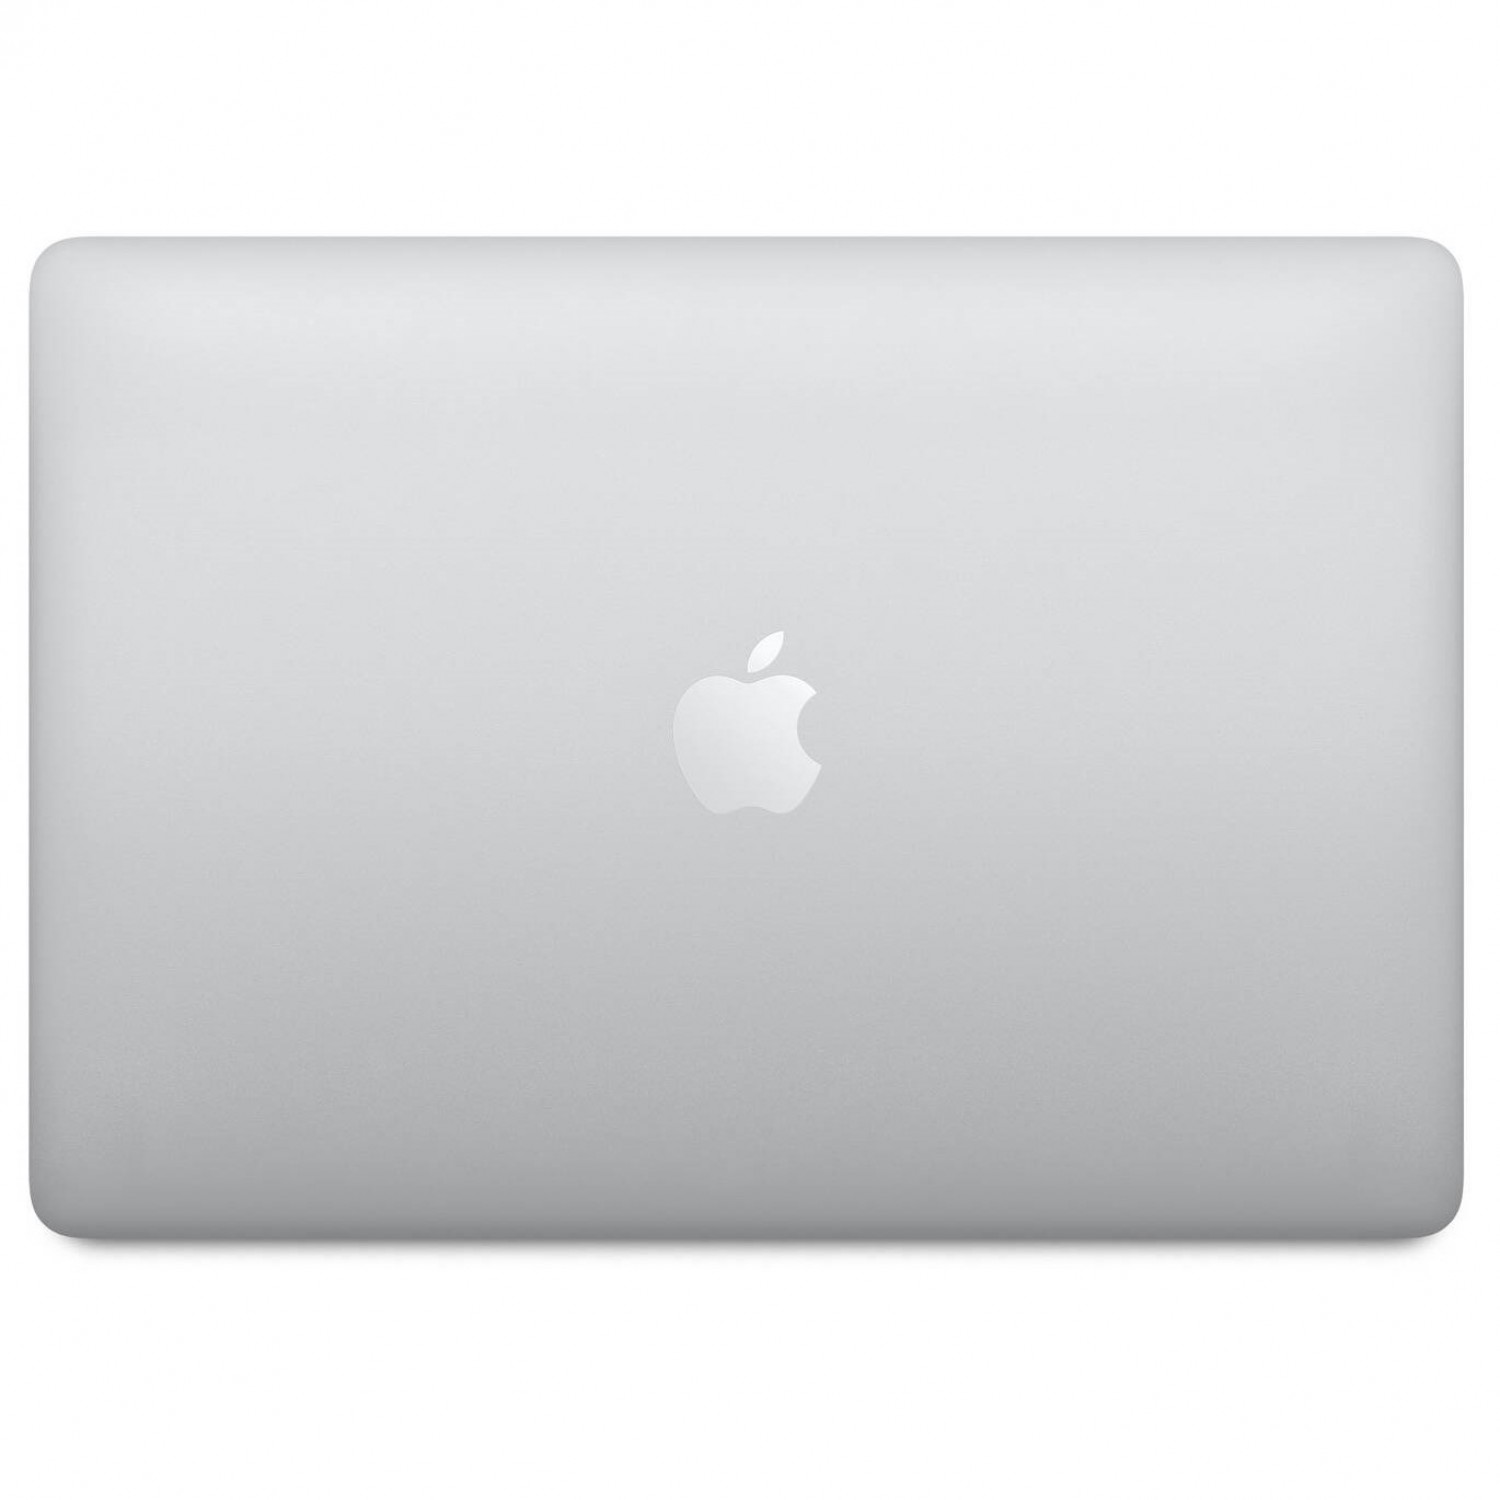 لپ تاپ Apple MacBook Pro 13 2020 CTO - Silver - D-5